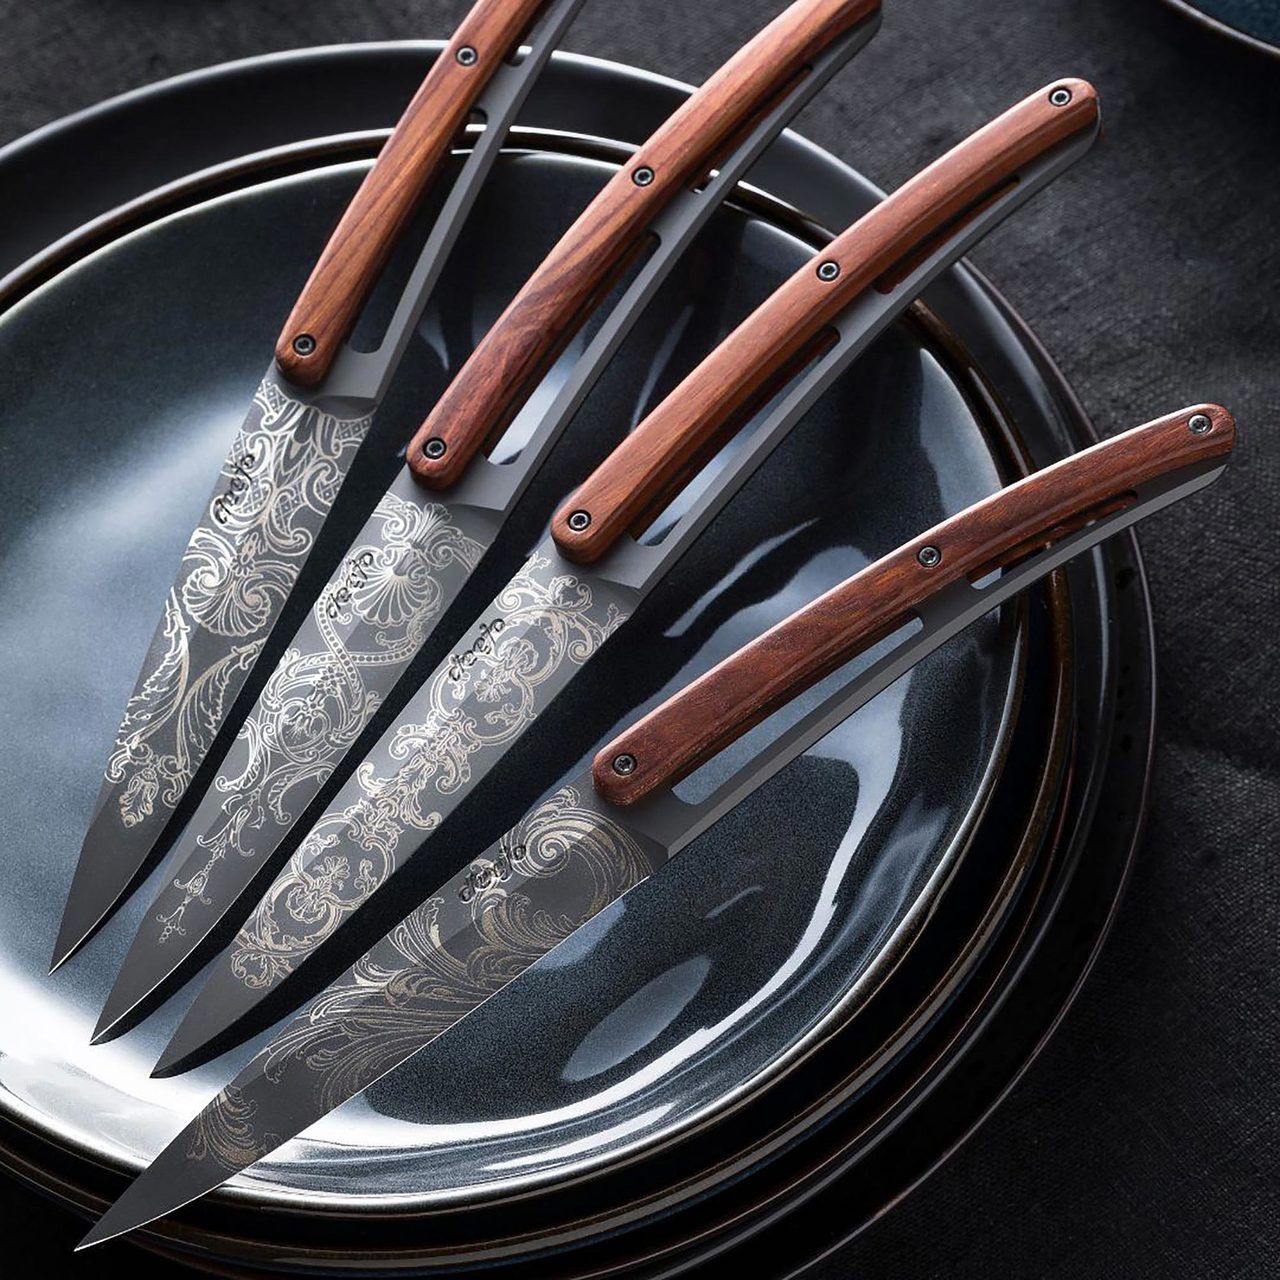 6 Deejo Steak Knives Serrated, Ebony Wood